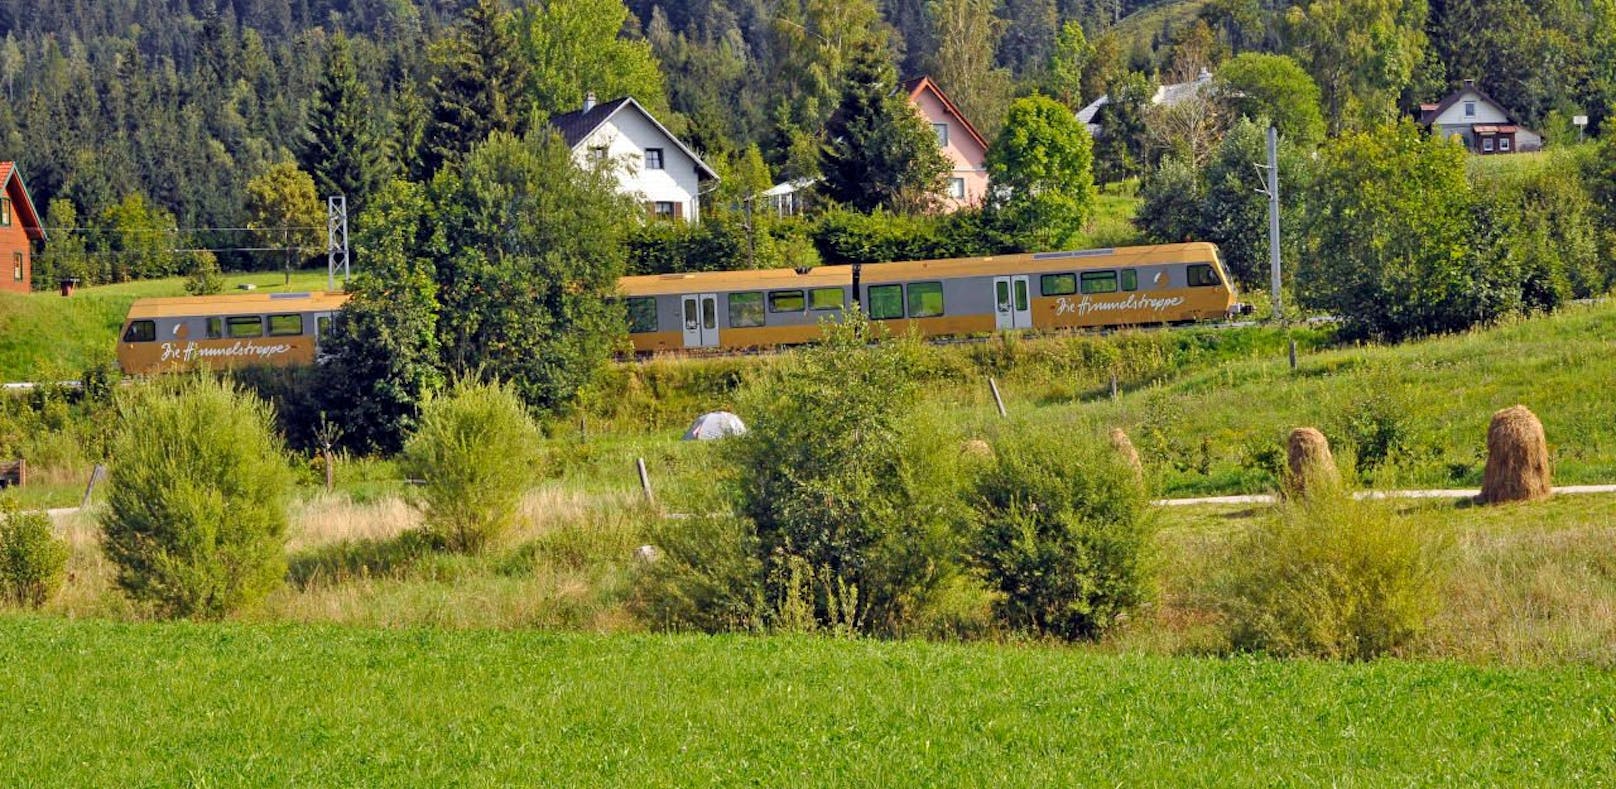 Die Mariazellerbahn im Naturpark Ötscher-Tormäuer: Das touristische Angebot der Mariazellerbahn mit Panoramawagen soll ebenfalls am 4. Juli starten.